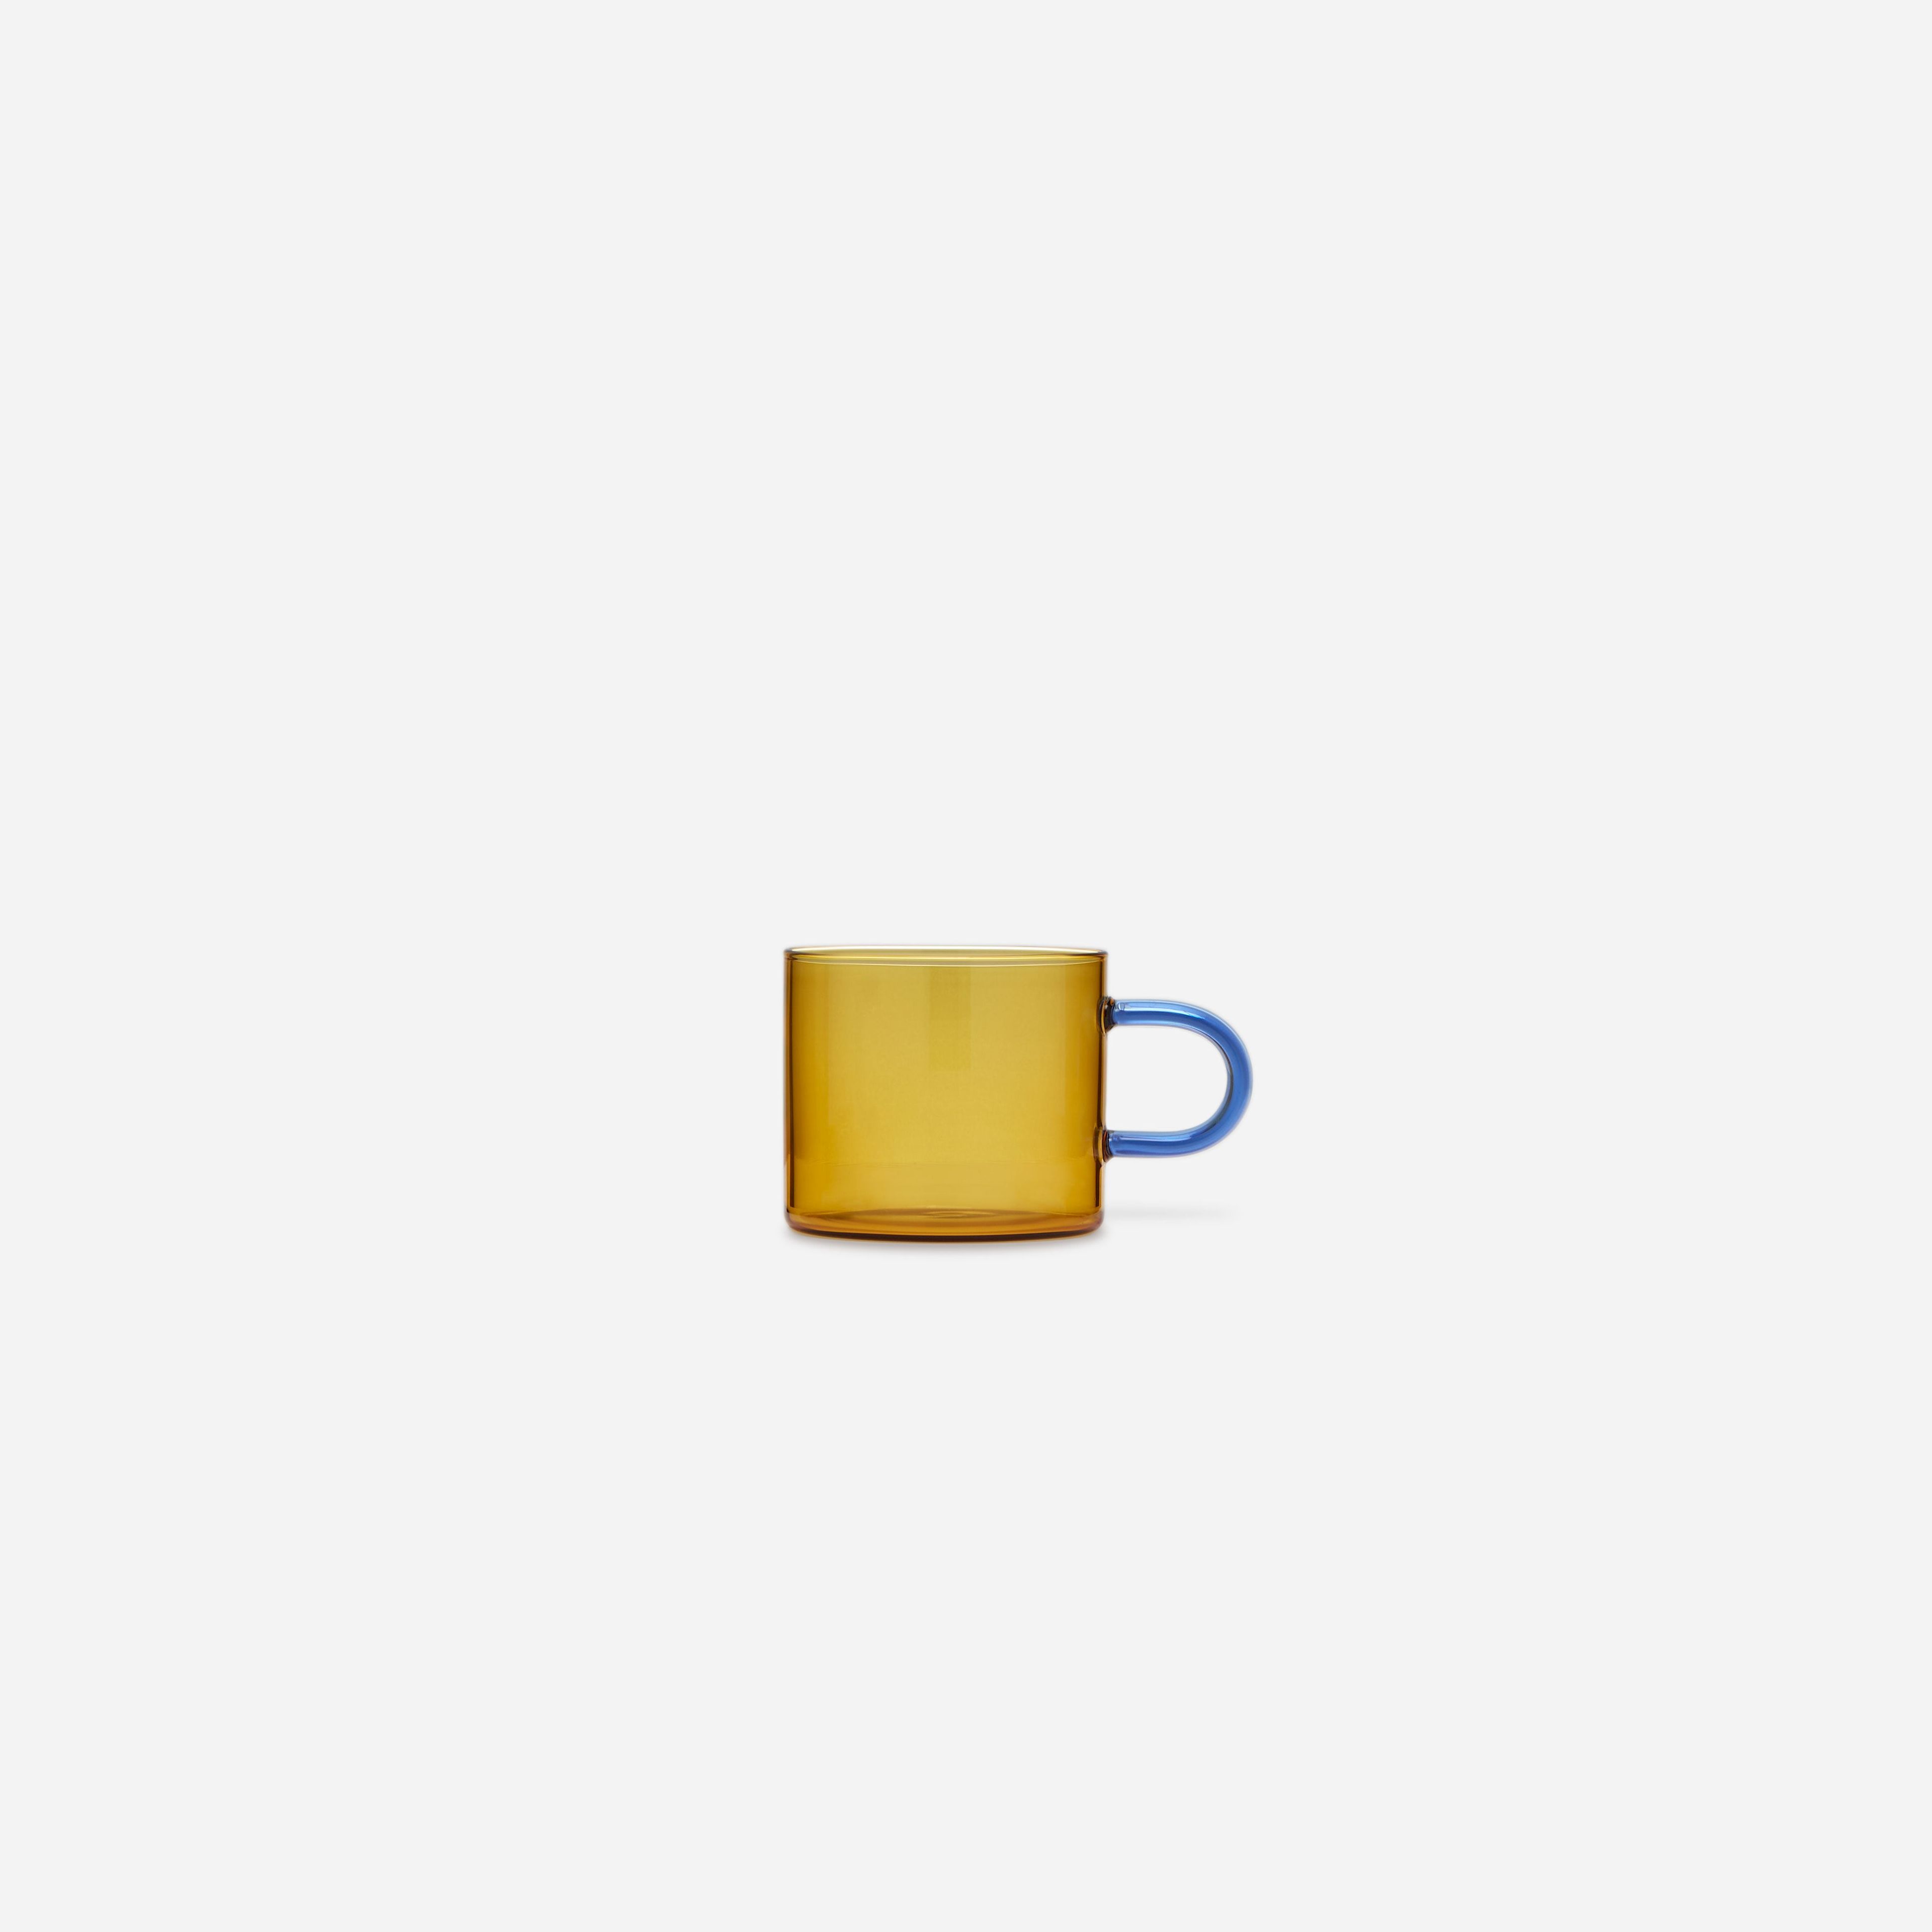 DODOMU: Lotta Coffee/Tea Cup Set - Field/Sky